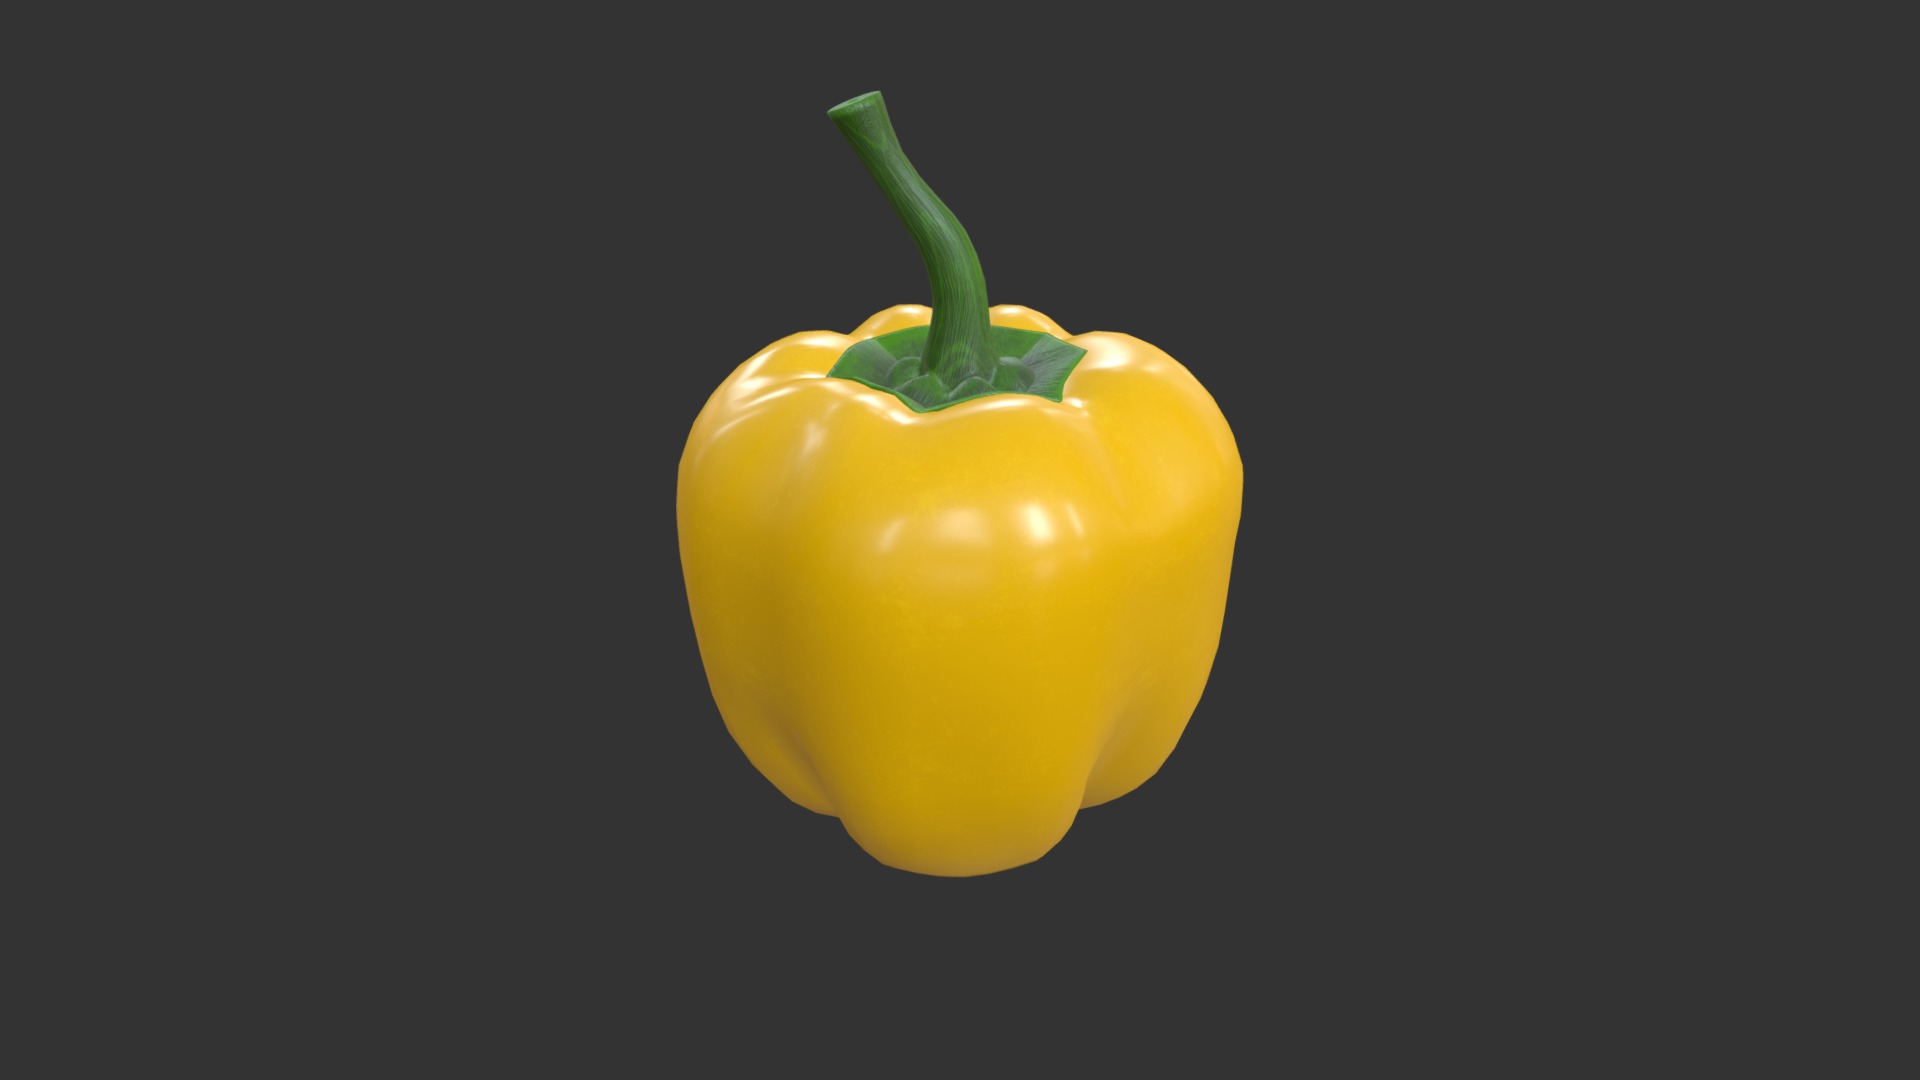 3D model Pepper bell yellow - This is a 3D model of the Pepper bell yellow. The 3D model is about a yellow bell pepper.